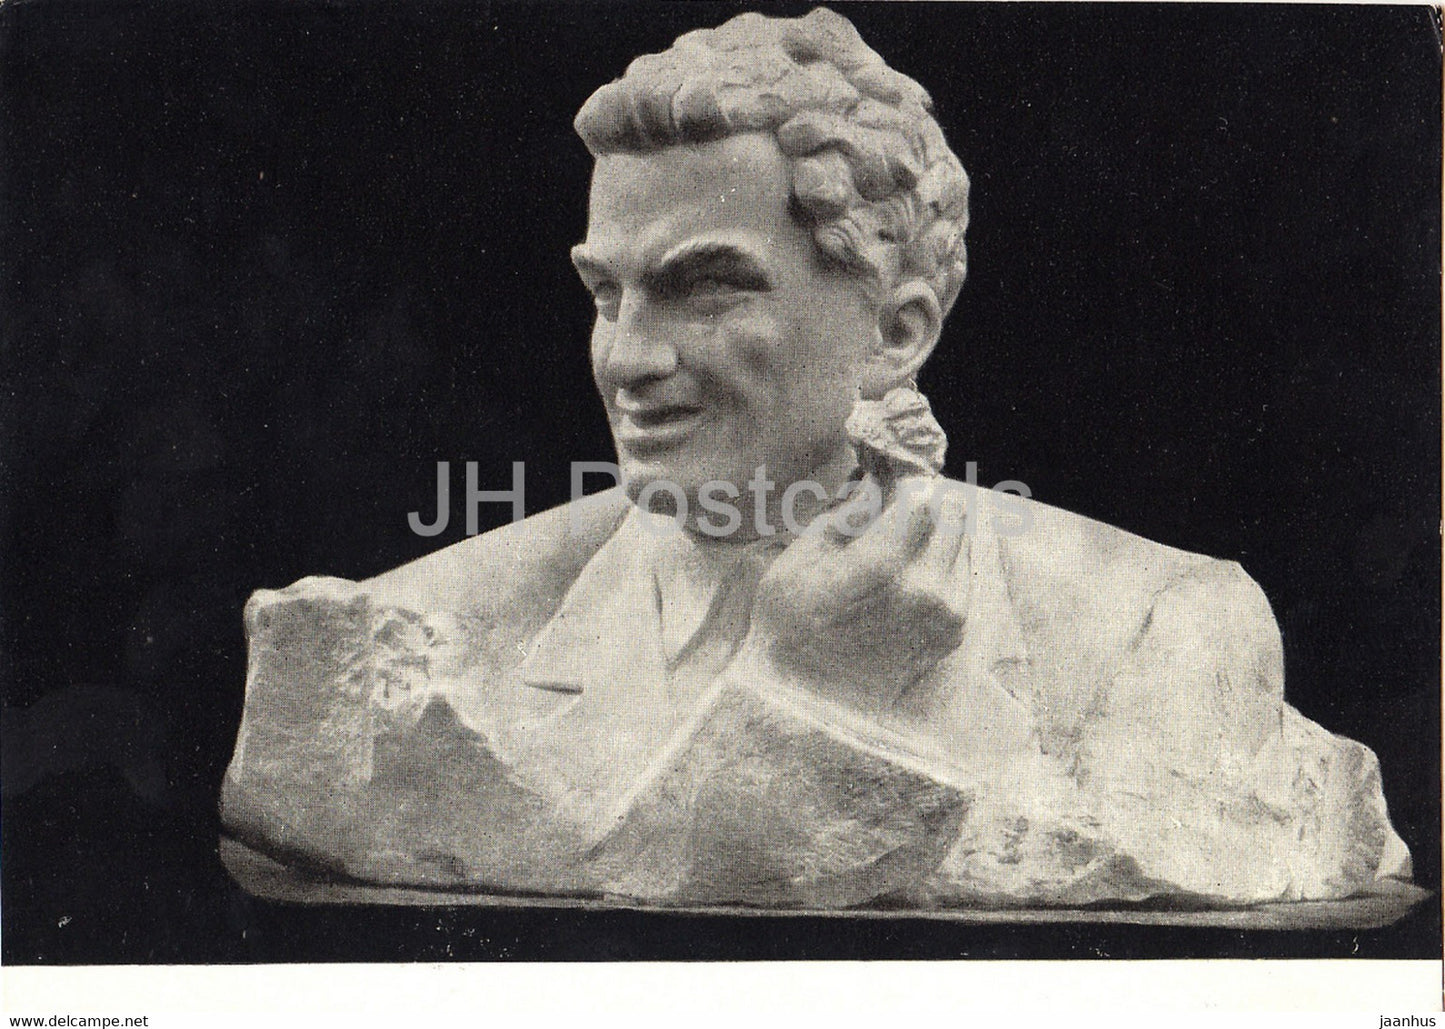 sculpture by S. Konenkov - Greek politician Nikos Beloyannis - Russian art - 1962 - Russia USSR - unused - JH Postcards